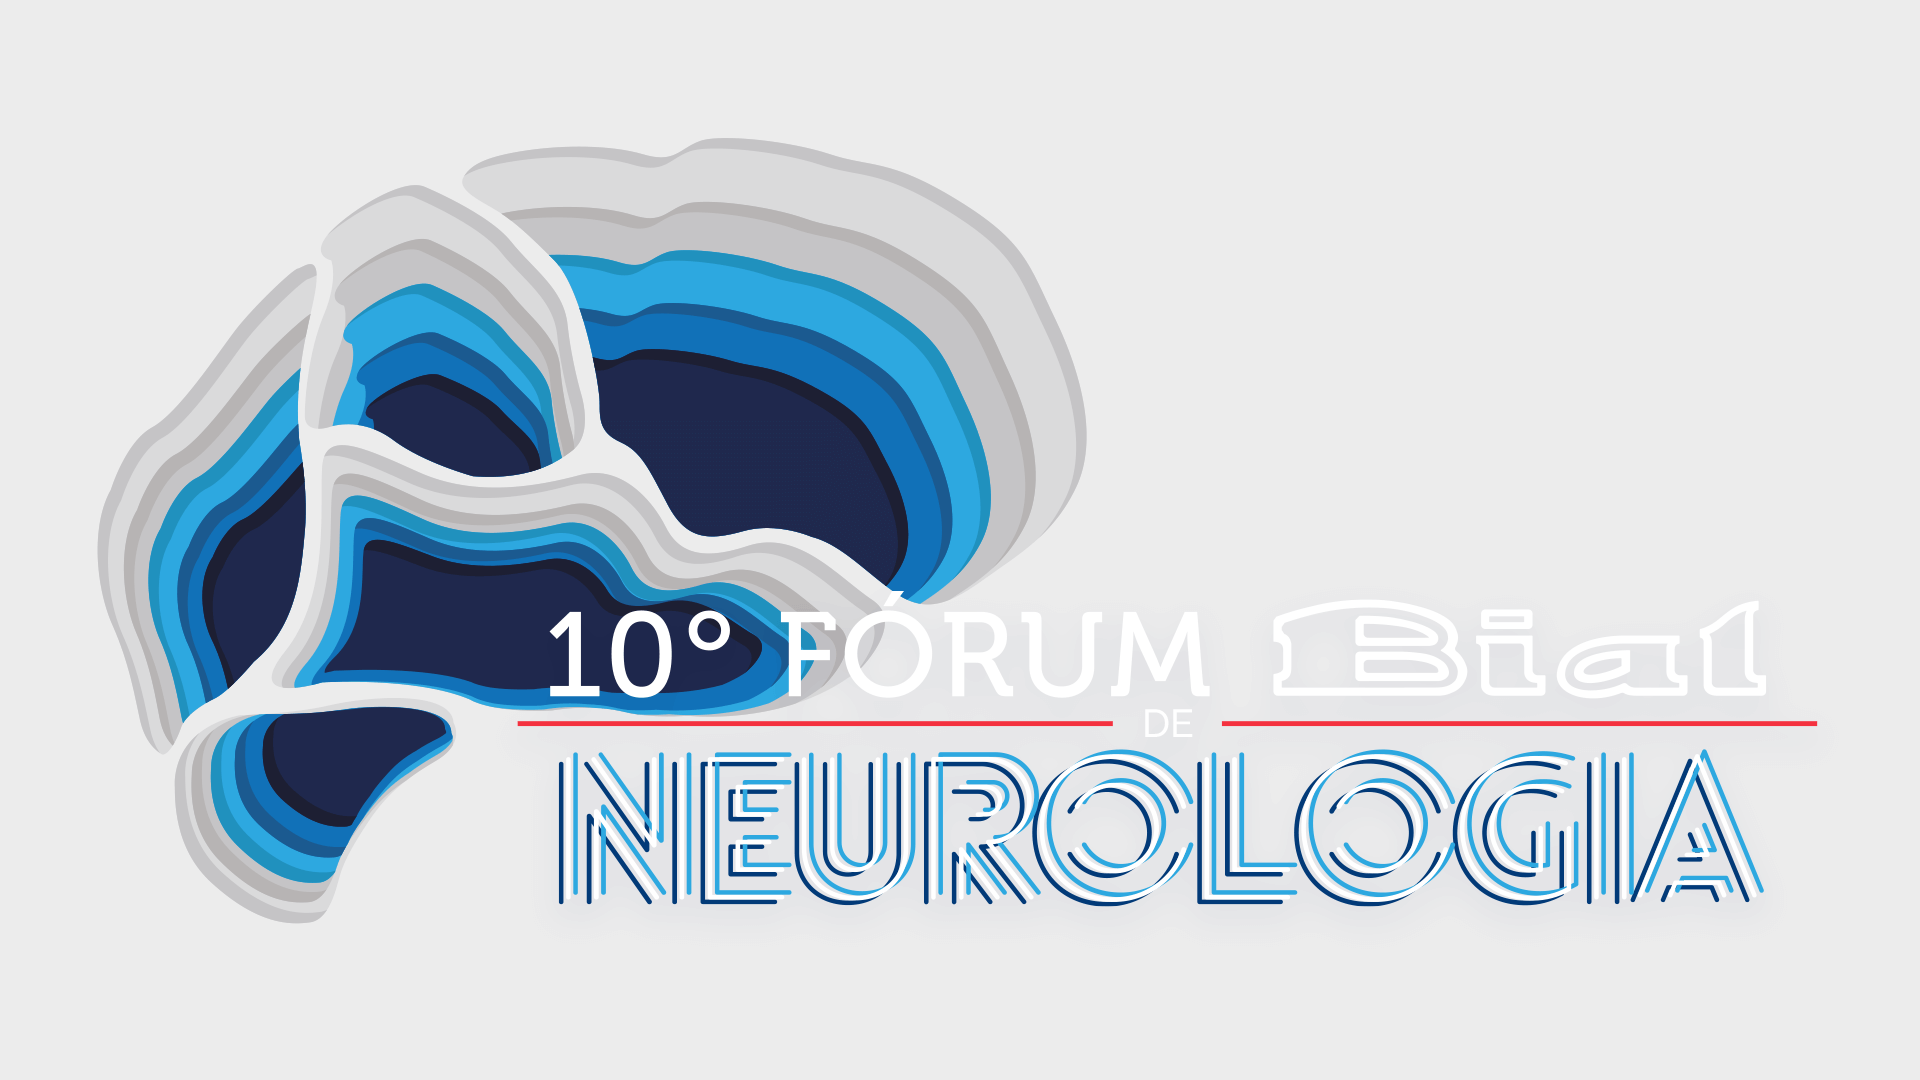 X Fórum de Neurologia